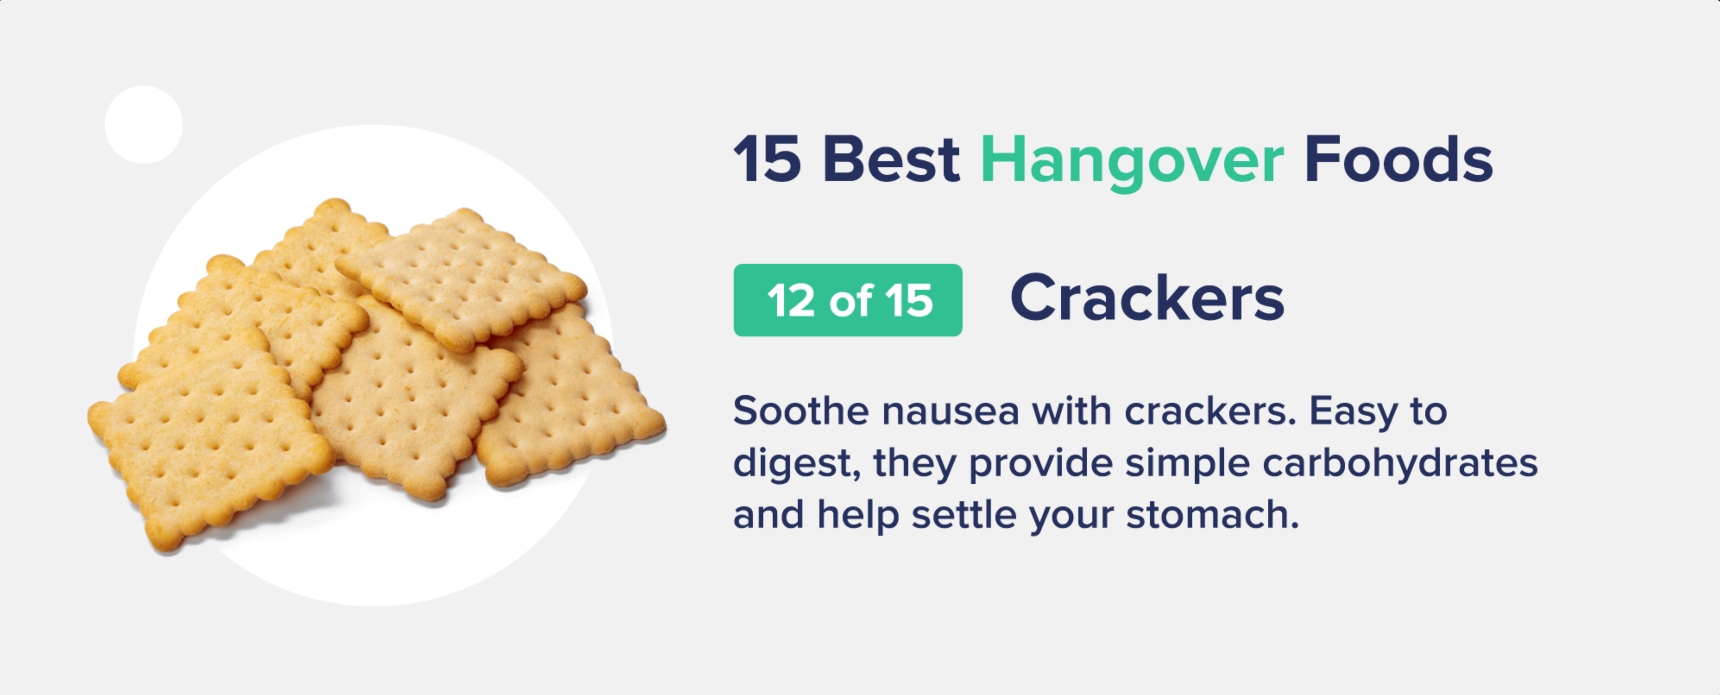 crackers best hangover foods